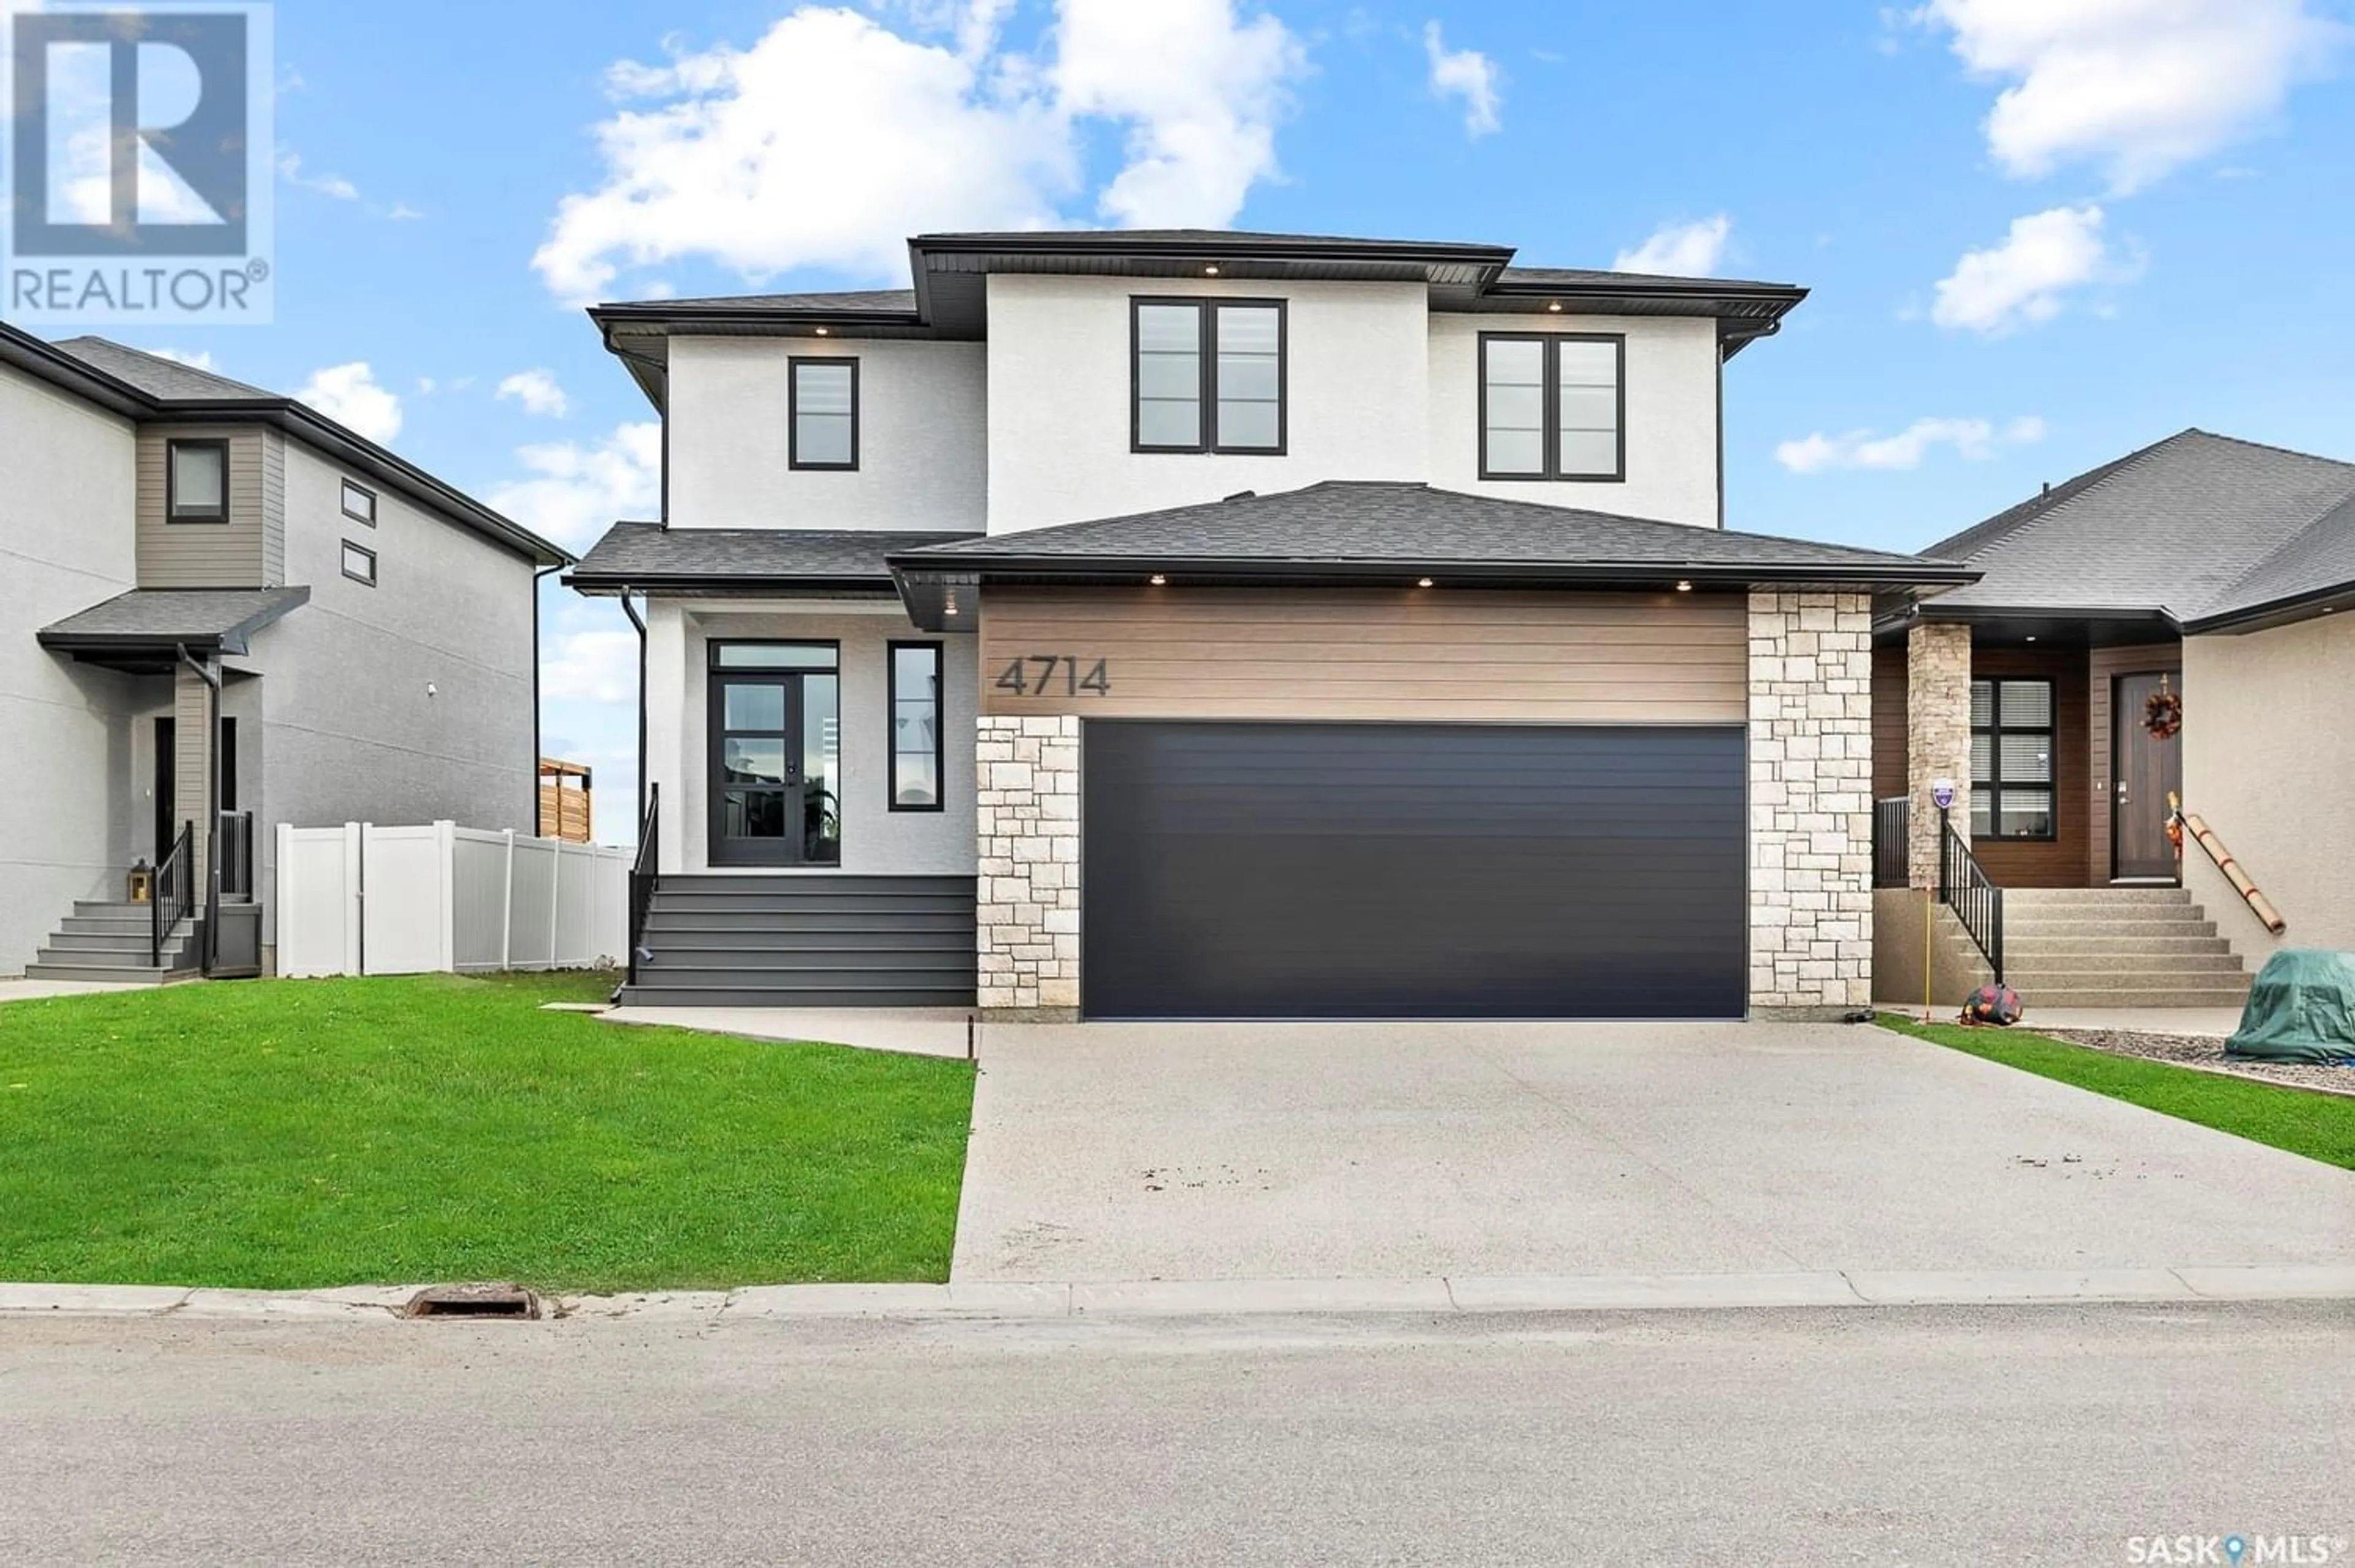 Home with stucco exterior material for 4714 Greenview CRESCENT E, Regina Saskatchewan S4V3L2